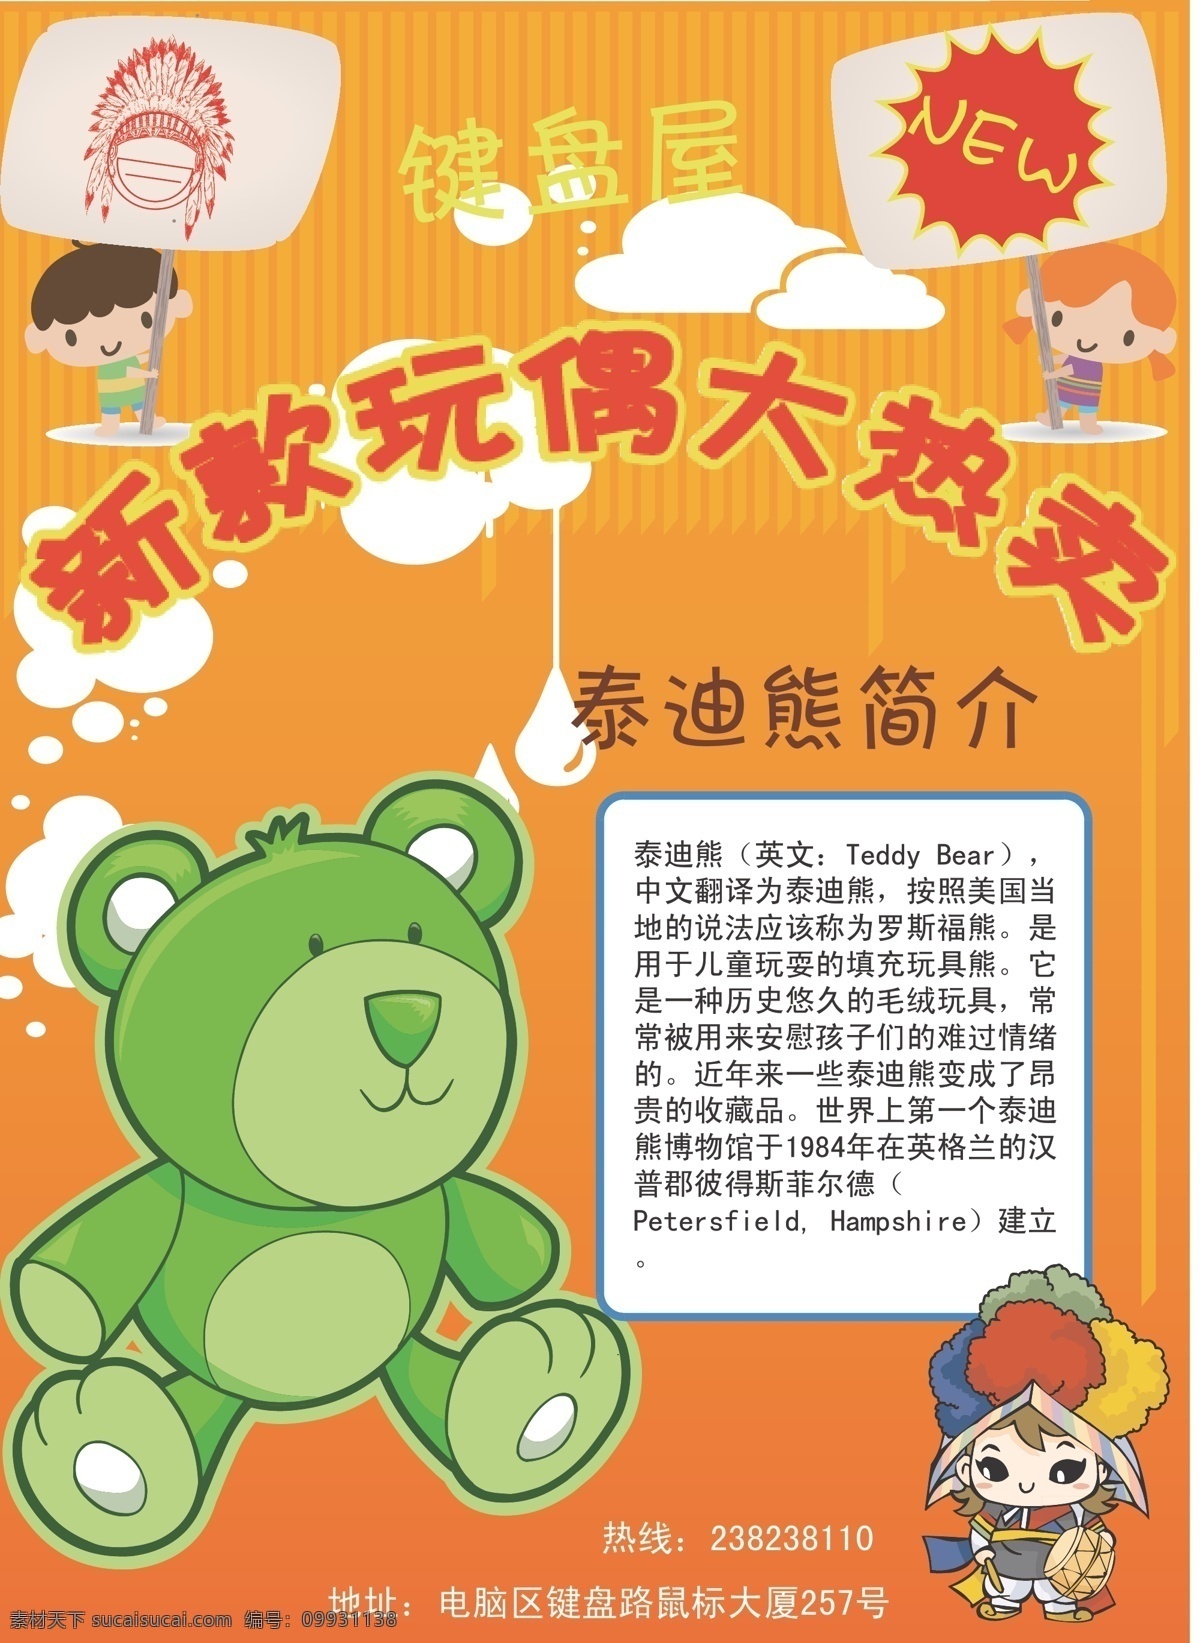 dm宣传单 橙色 创意 动画 动漫 卡通 绿色 人物 玩偶 宣传单 熊 泰迪熊 玩具 矢量 psd源文件